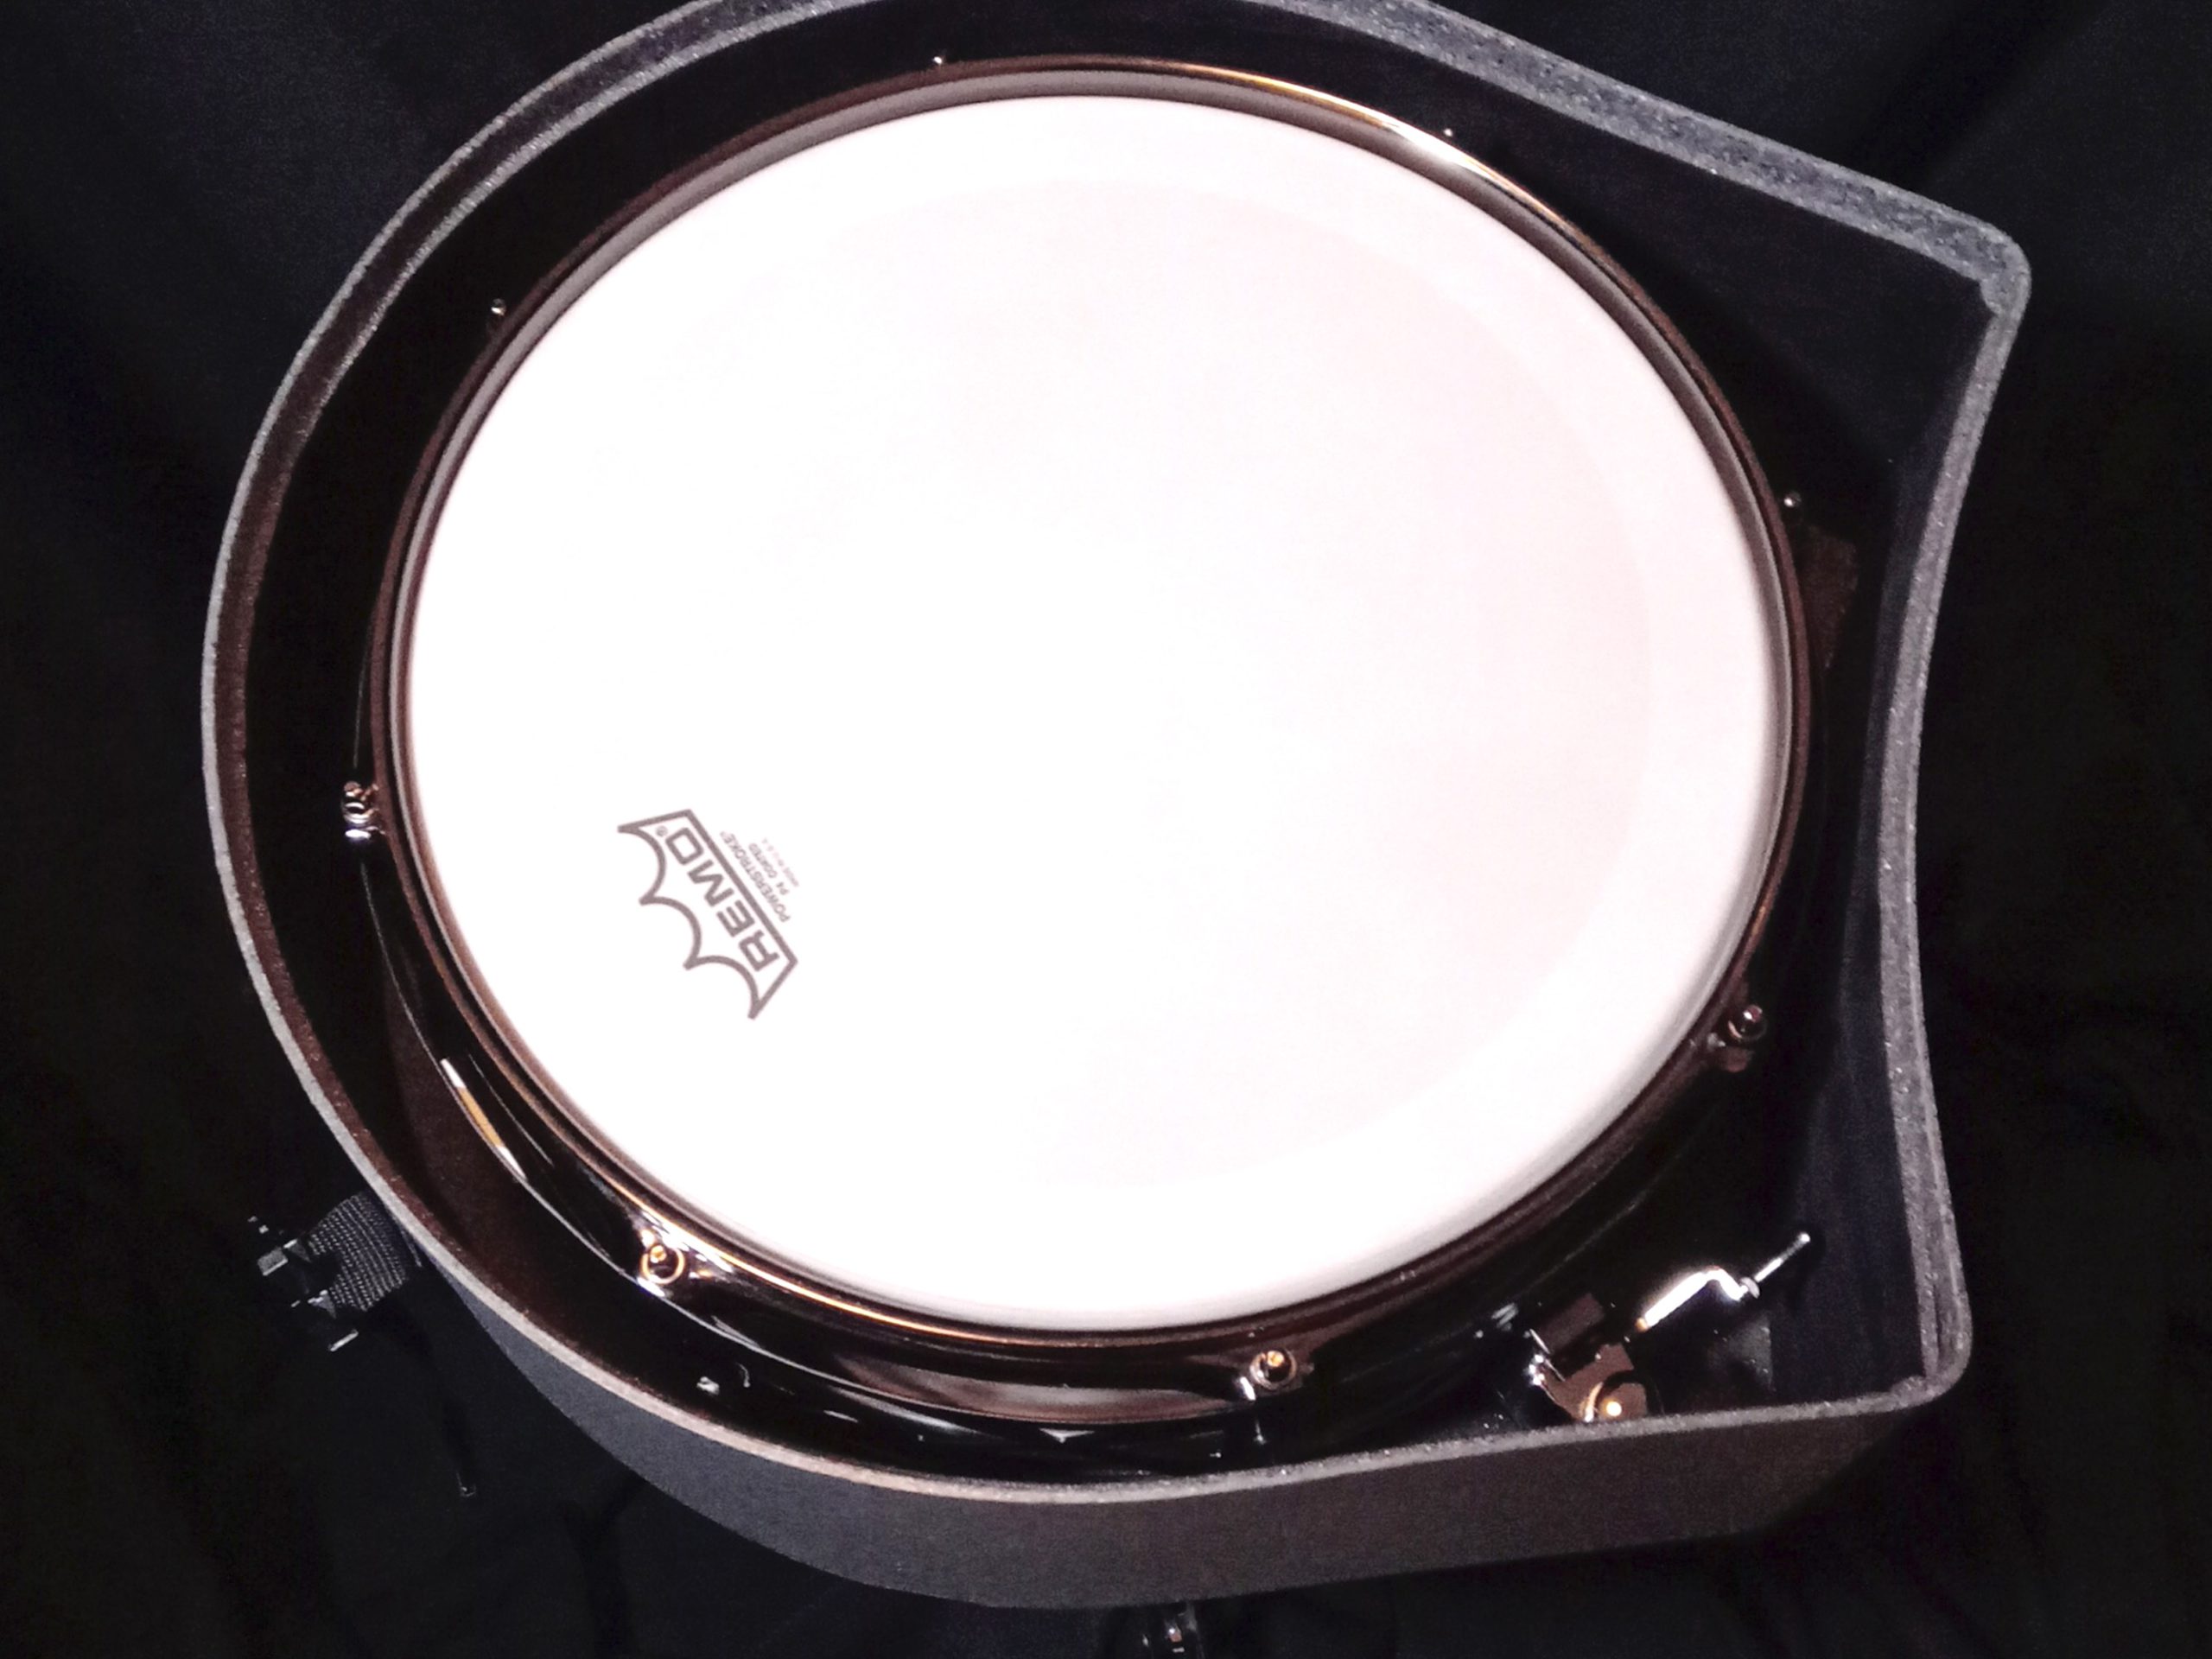 Free floating snare, designer snare drum in case